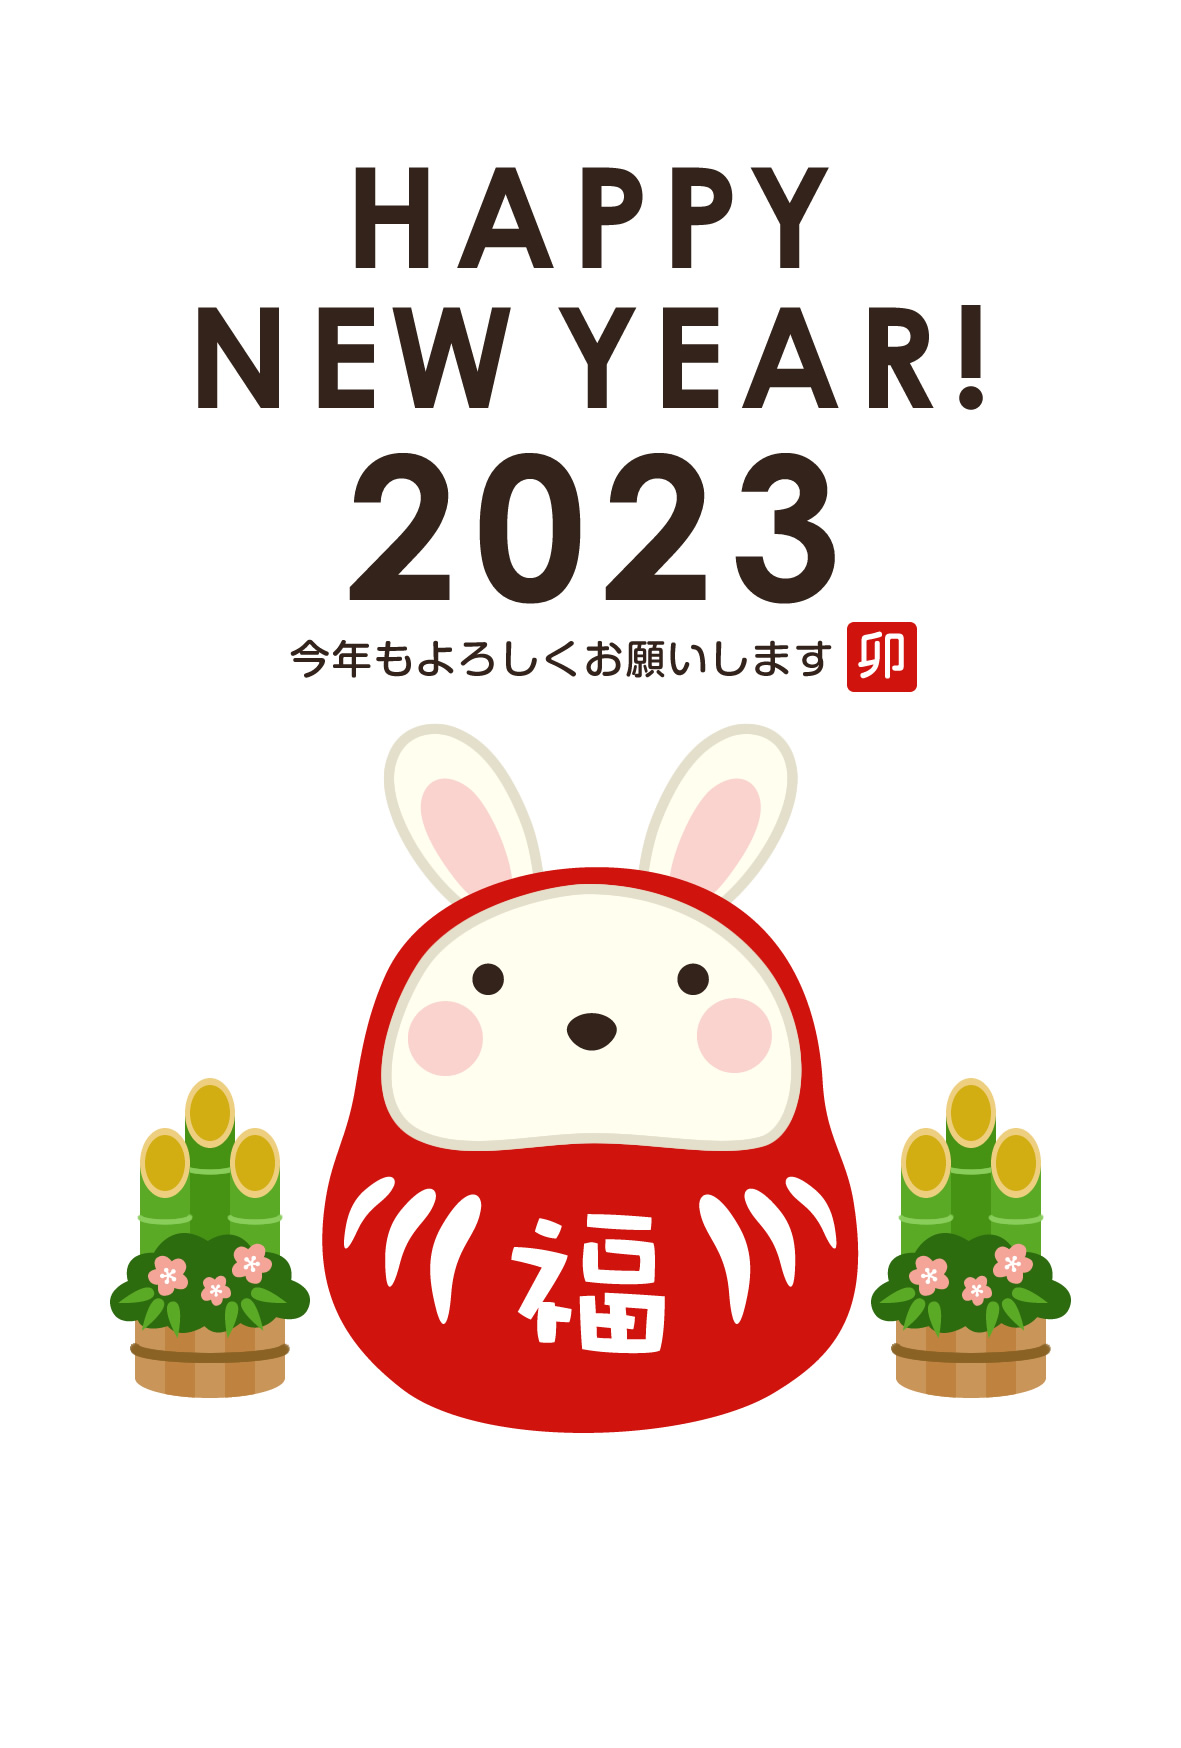 2023年賀状デザイン無料テンプレート「だるまになったかわいいウサギ」